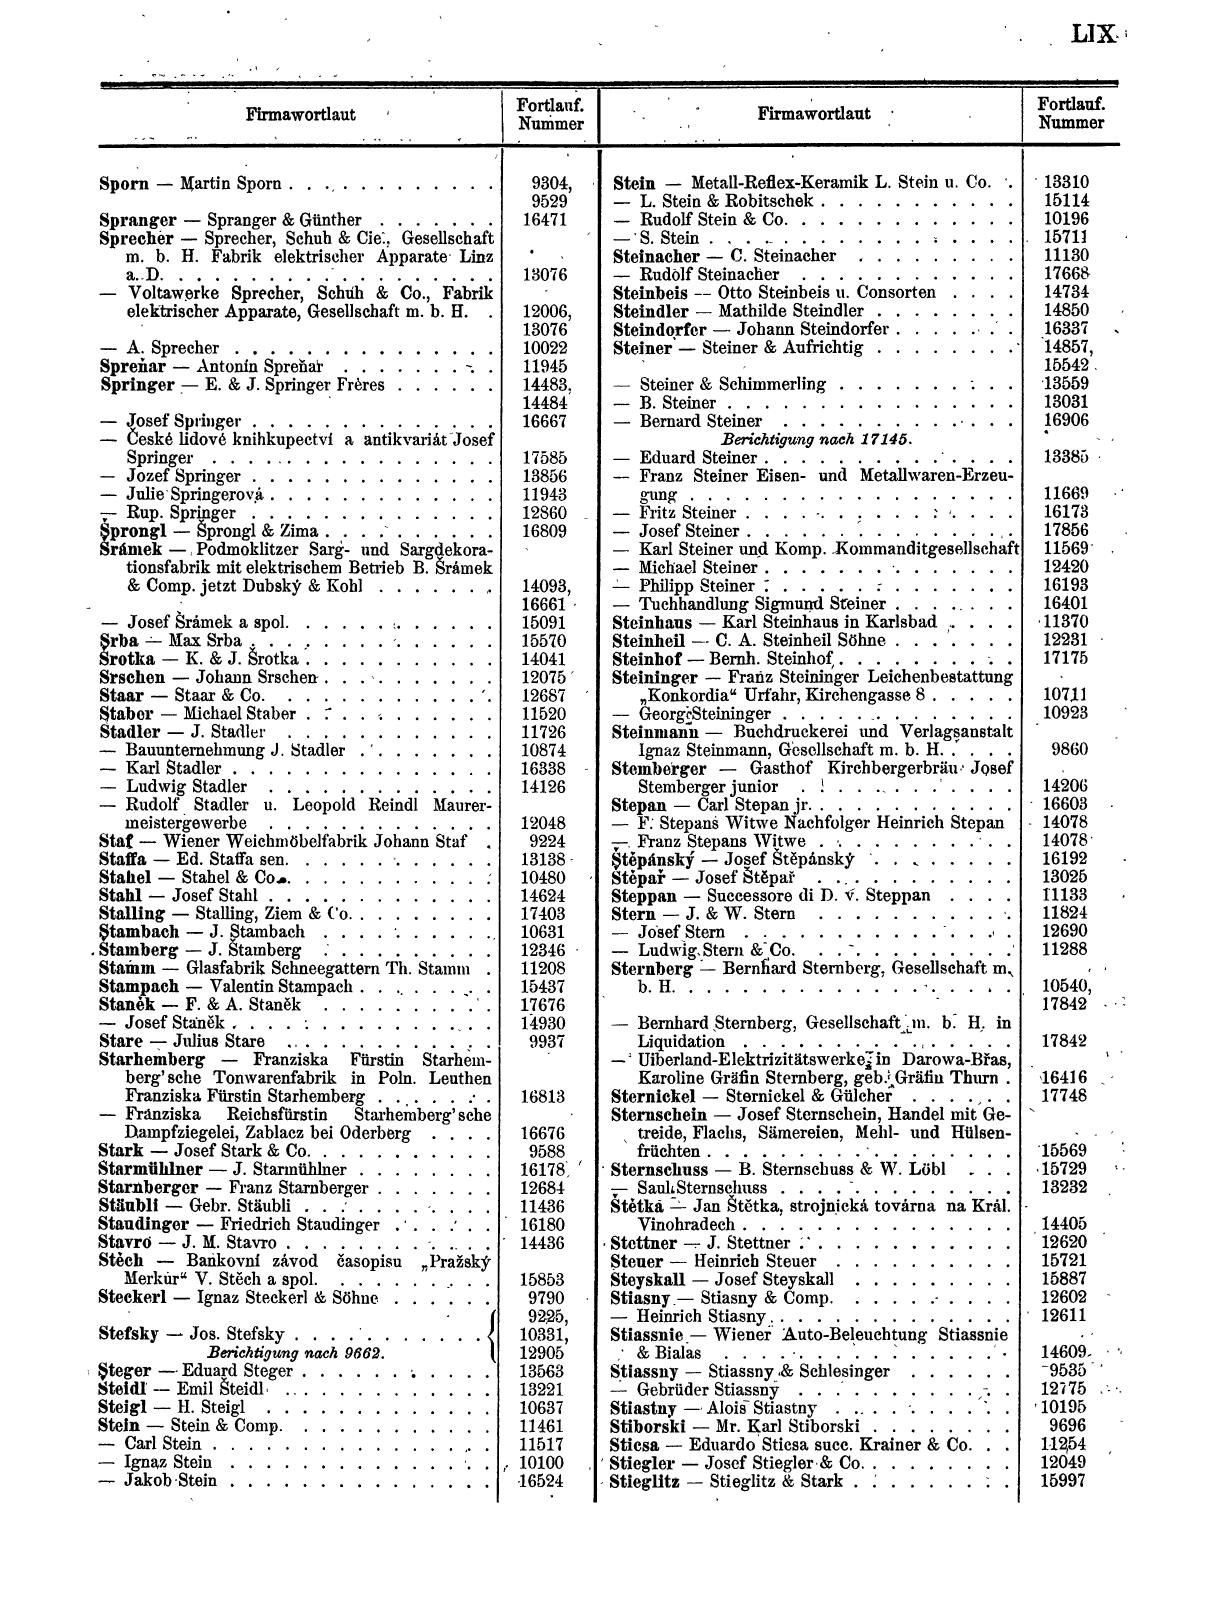 Zentralblatt für die Eintragungen in das Handelsregister 1913, Teil 2 - Seite 63